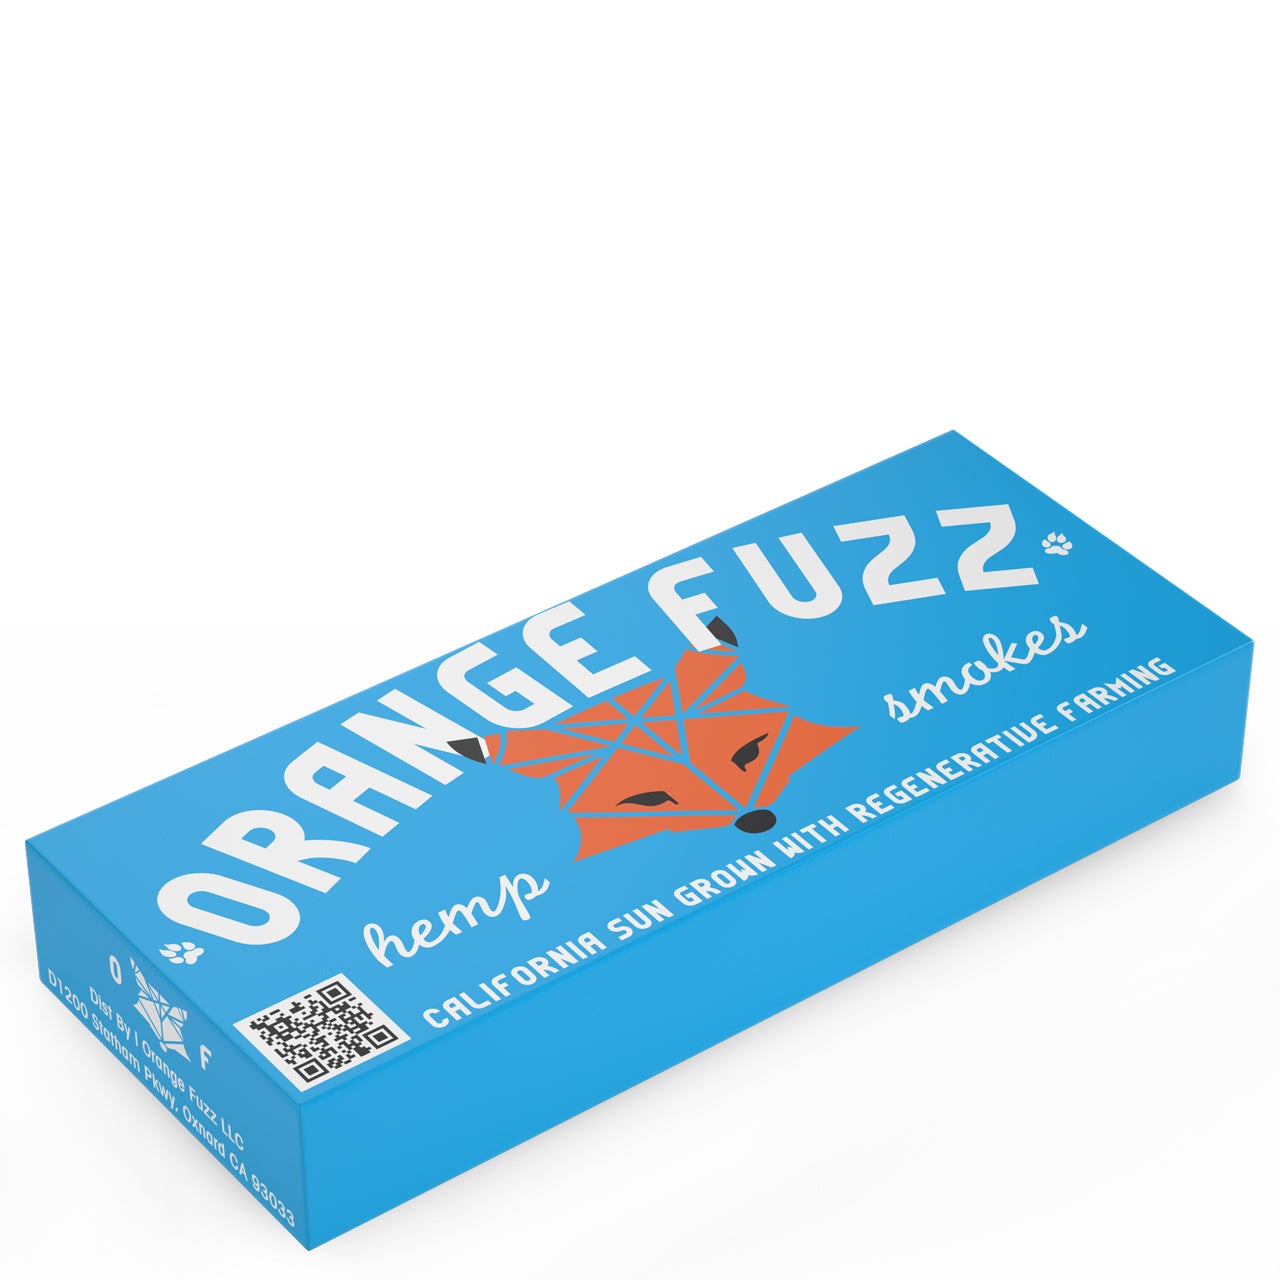 1 Carton Orange Fuzz USDA Certified Organic Hemp Smokes - CBD 23% - 100ct